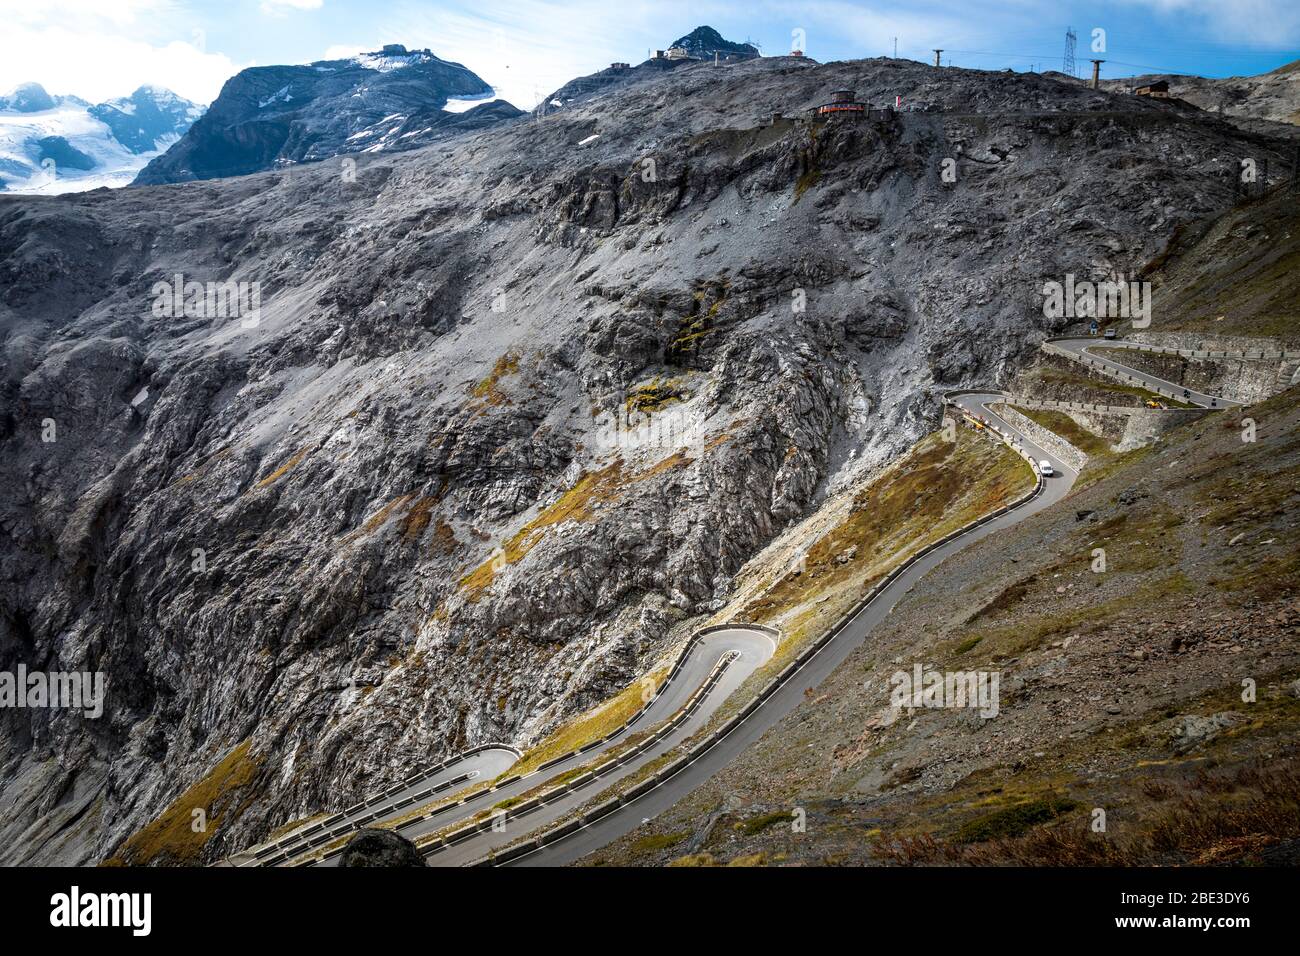 El acercamiento al Passo dello Stelvio (Paso de Stelvio) mostrando sus muchas curvas de horquilla, Italia. Foto de stock